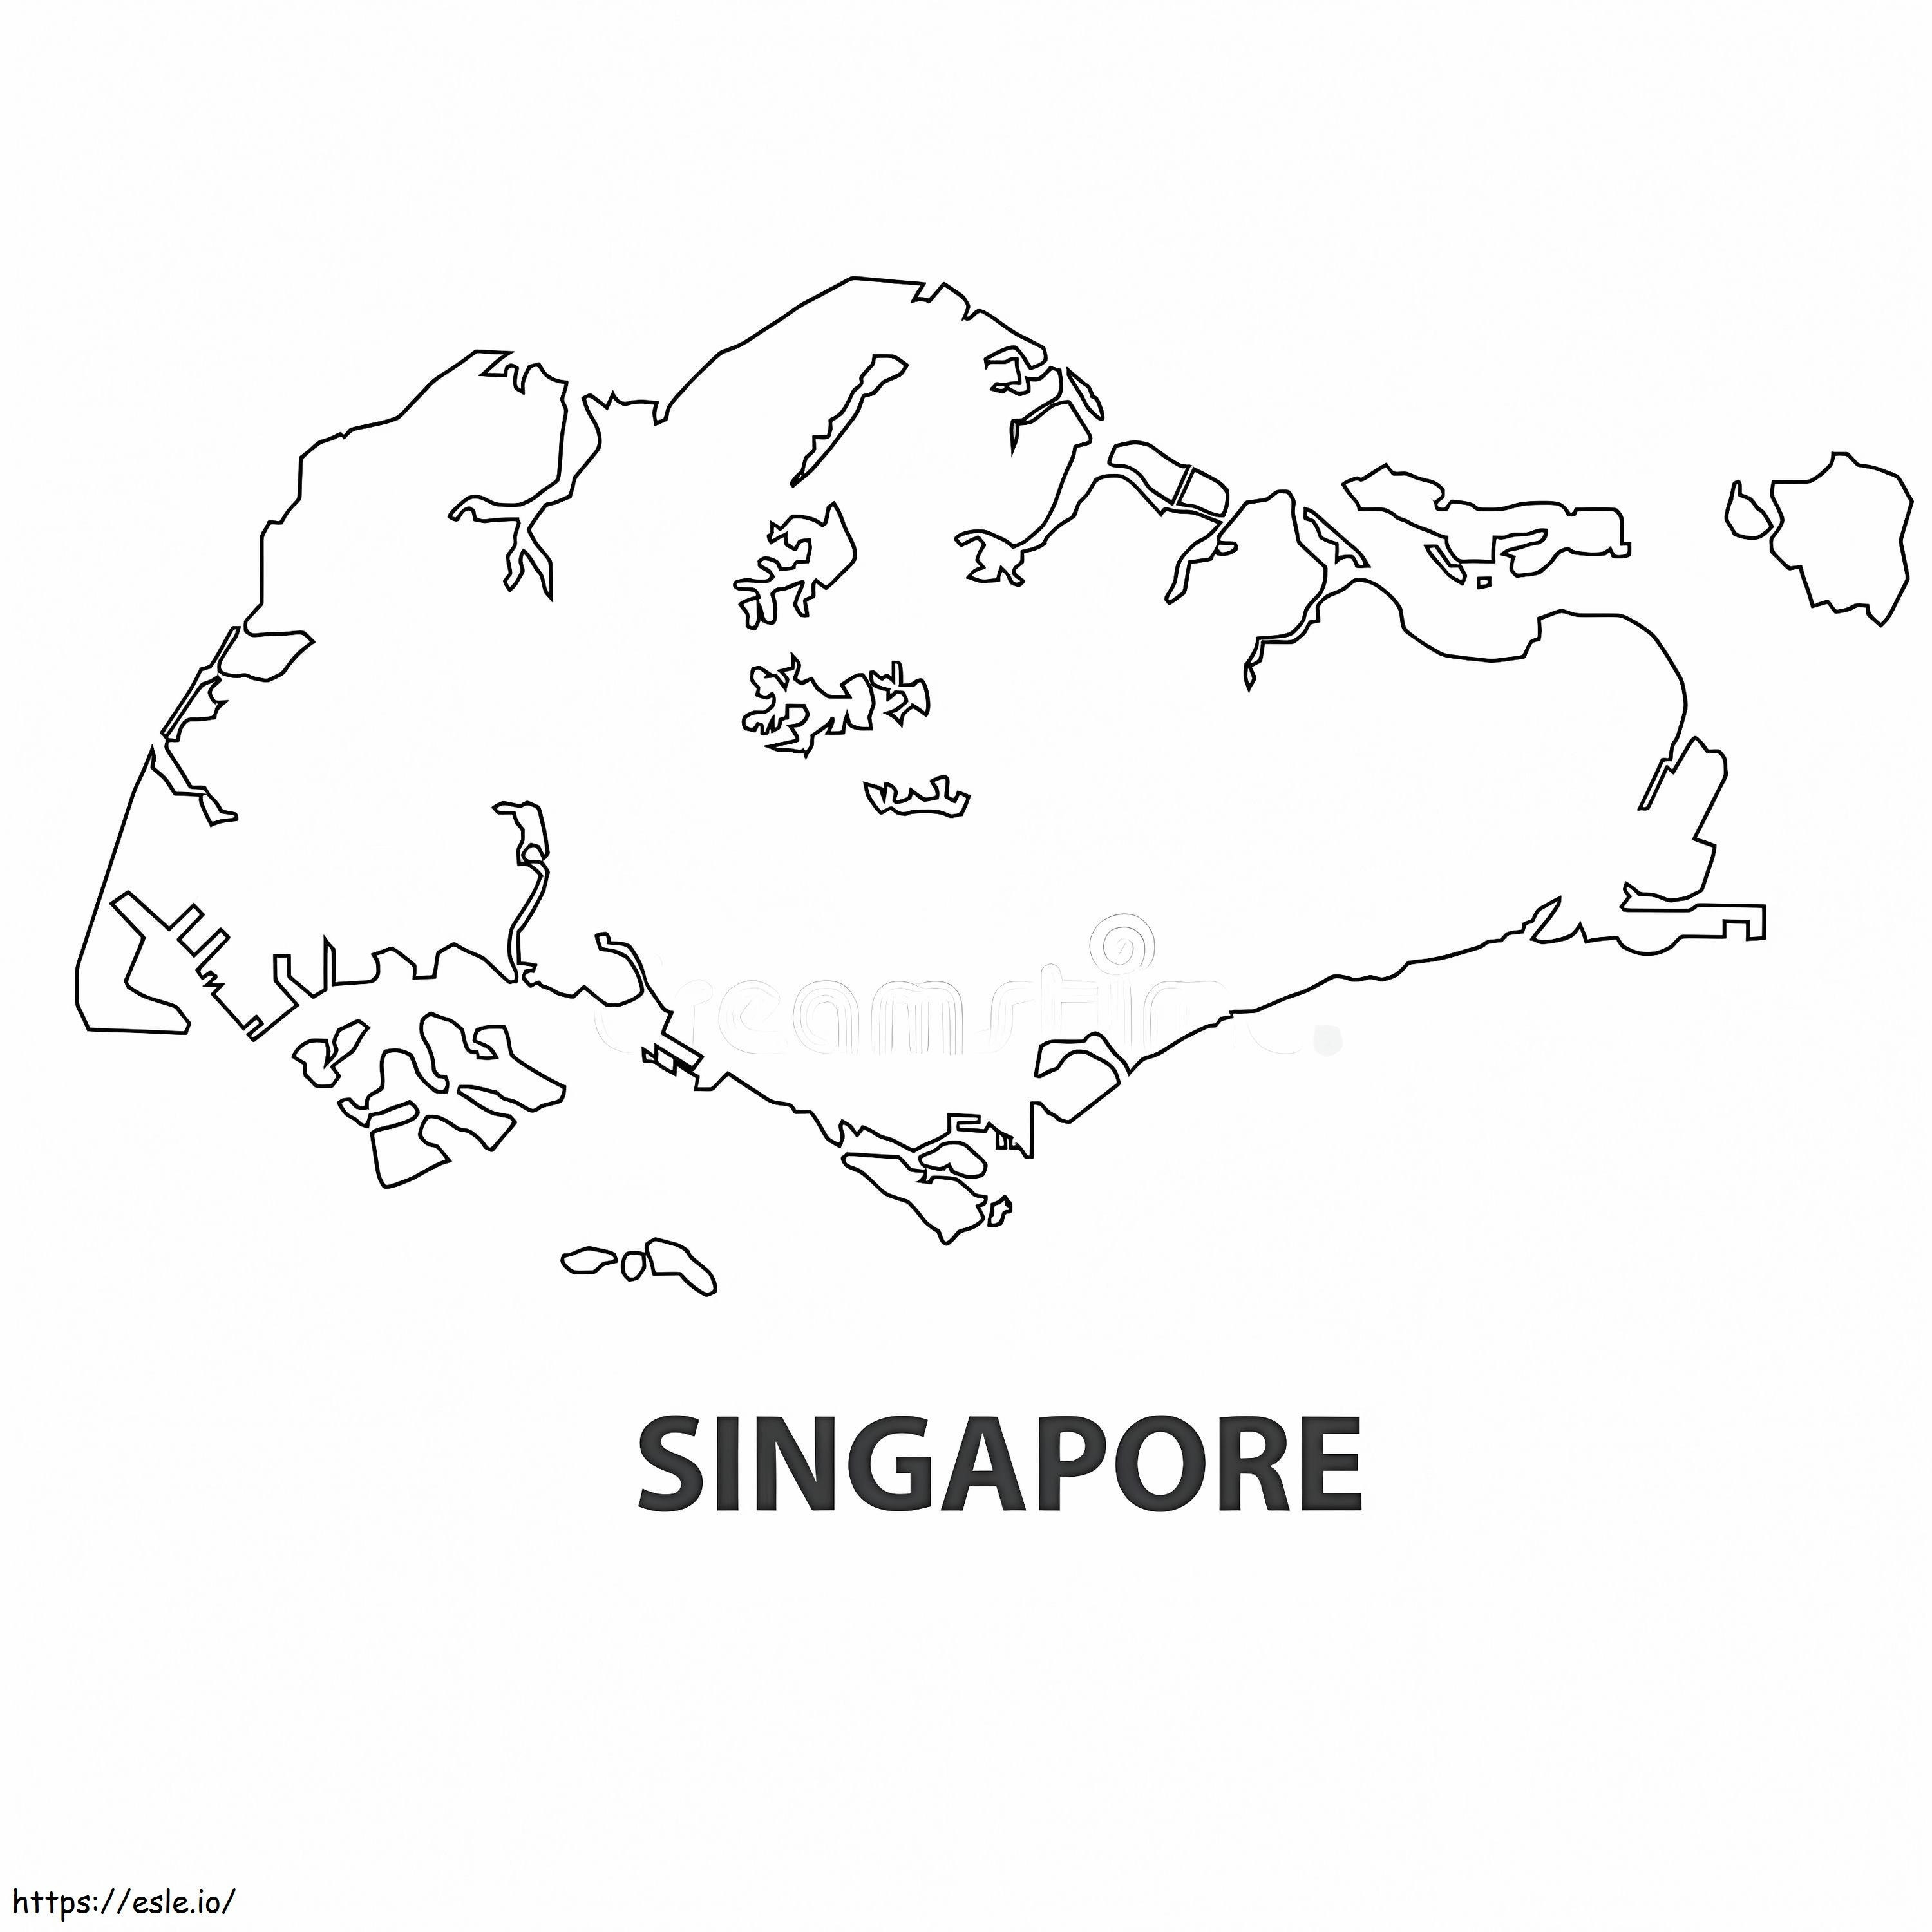 Singapur Haritası Boyama Sayfası boyama